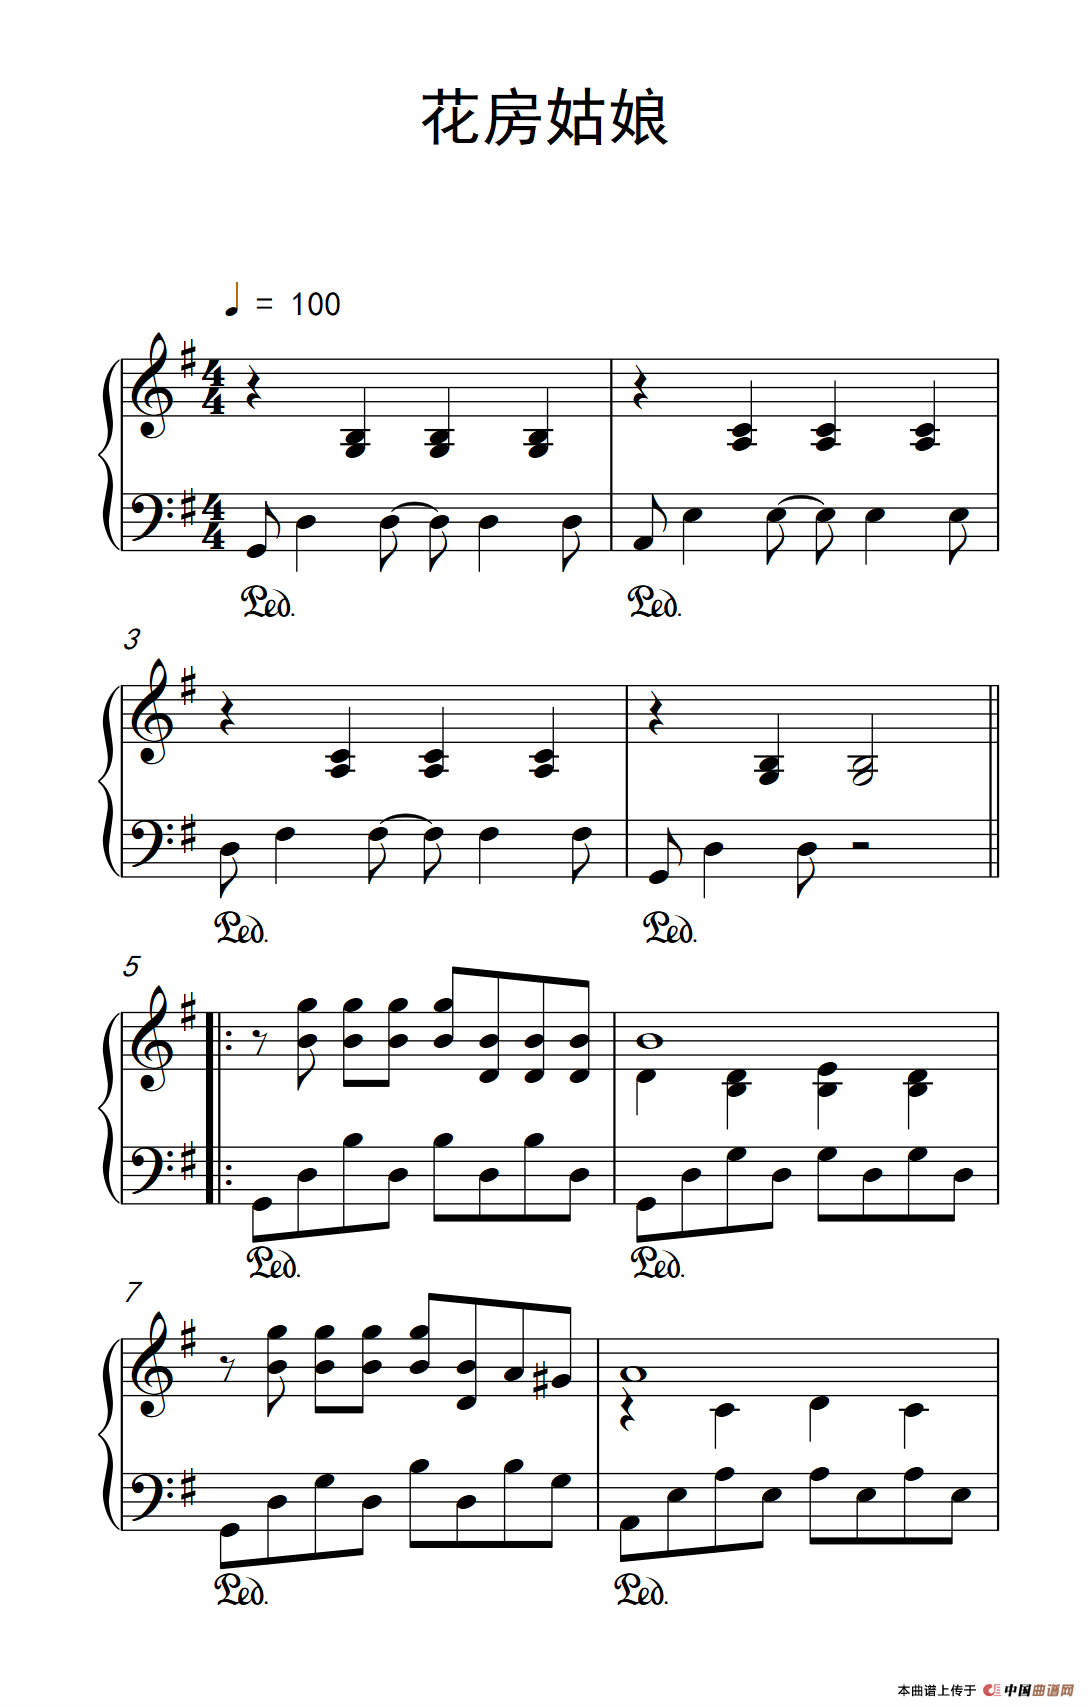 《花房姑娘》钢琴曲谱图分享